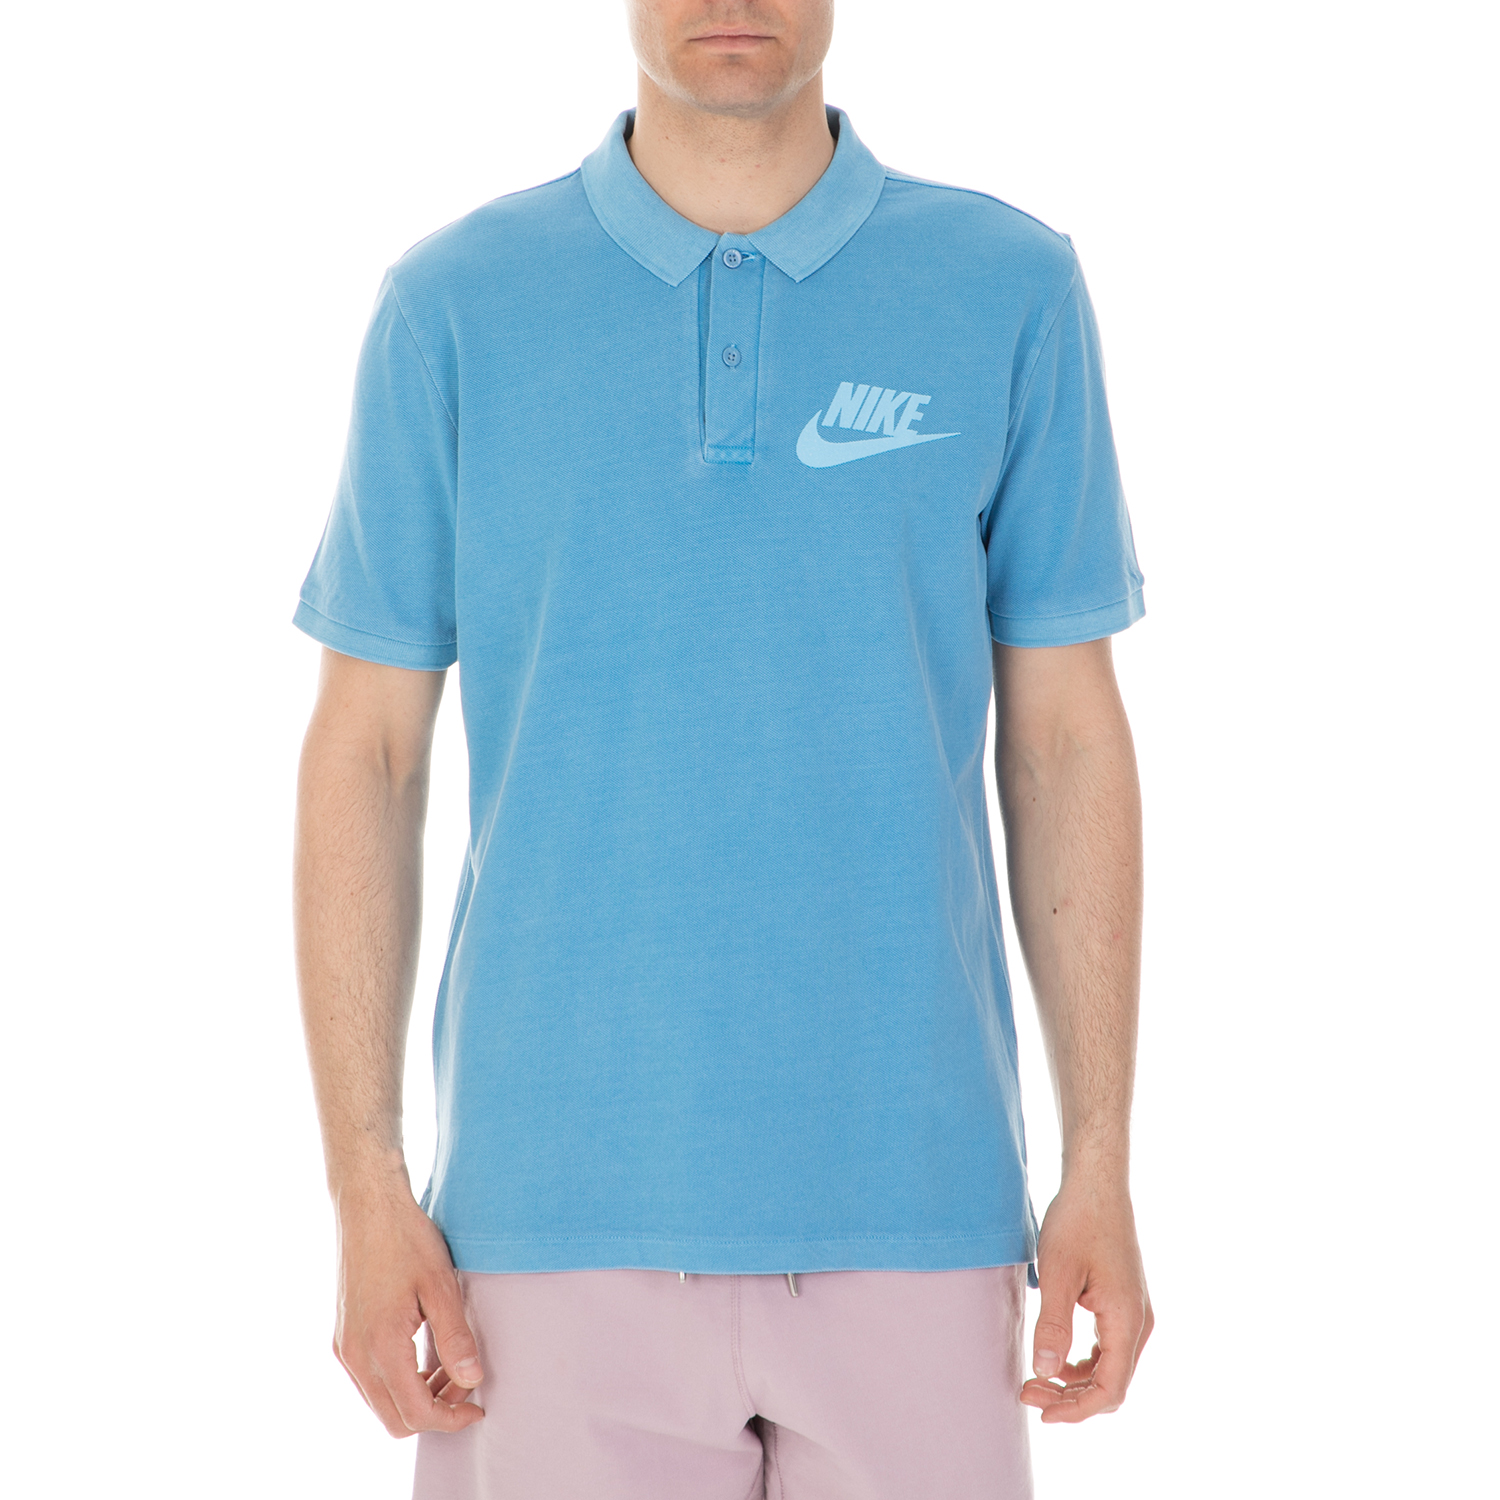 Ανδρικά/Ρούχα/Μπλούζες/Πόλο NIKE - Ανδρική μπλούζα πόλο Nike Sportswear γαλάζια